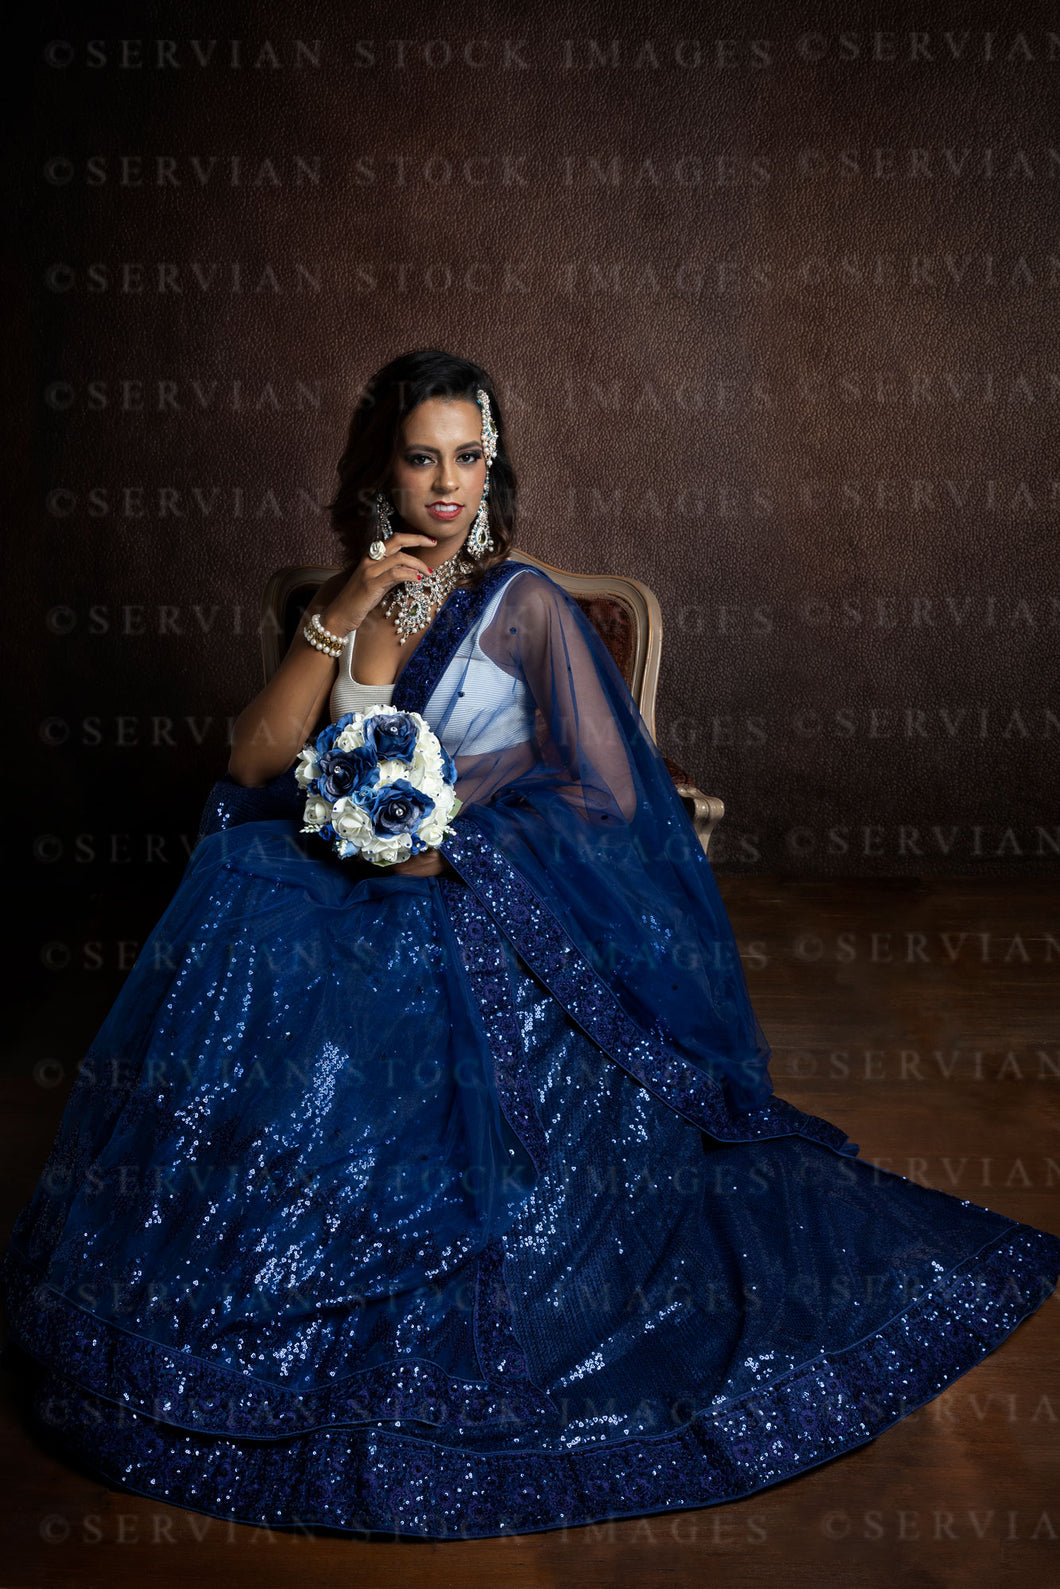 Woman wearing a blue sari  (Shelaila 9802)